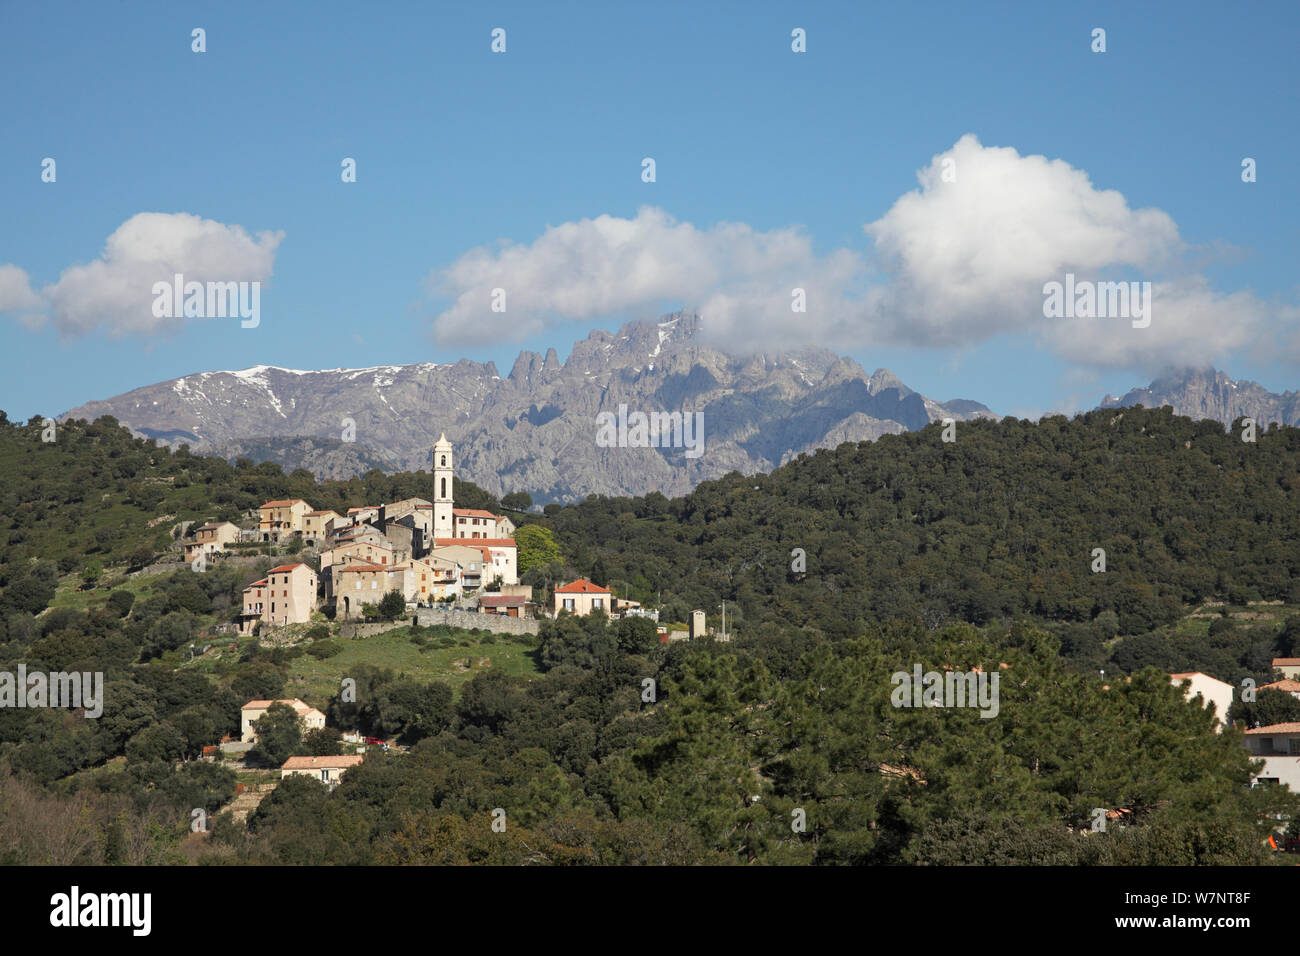 View of Soveria village, Parc Naturel Regional de Corse, Corsica, France, April 2010. Stock Photo